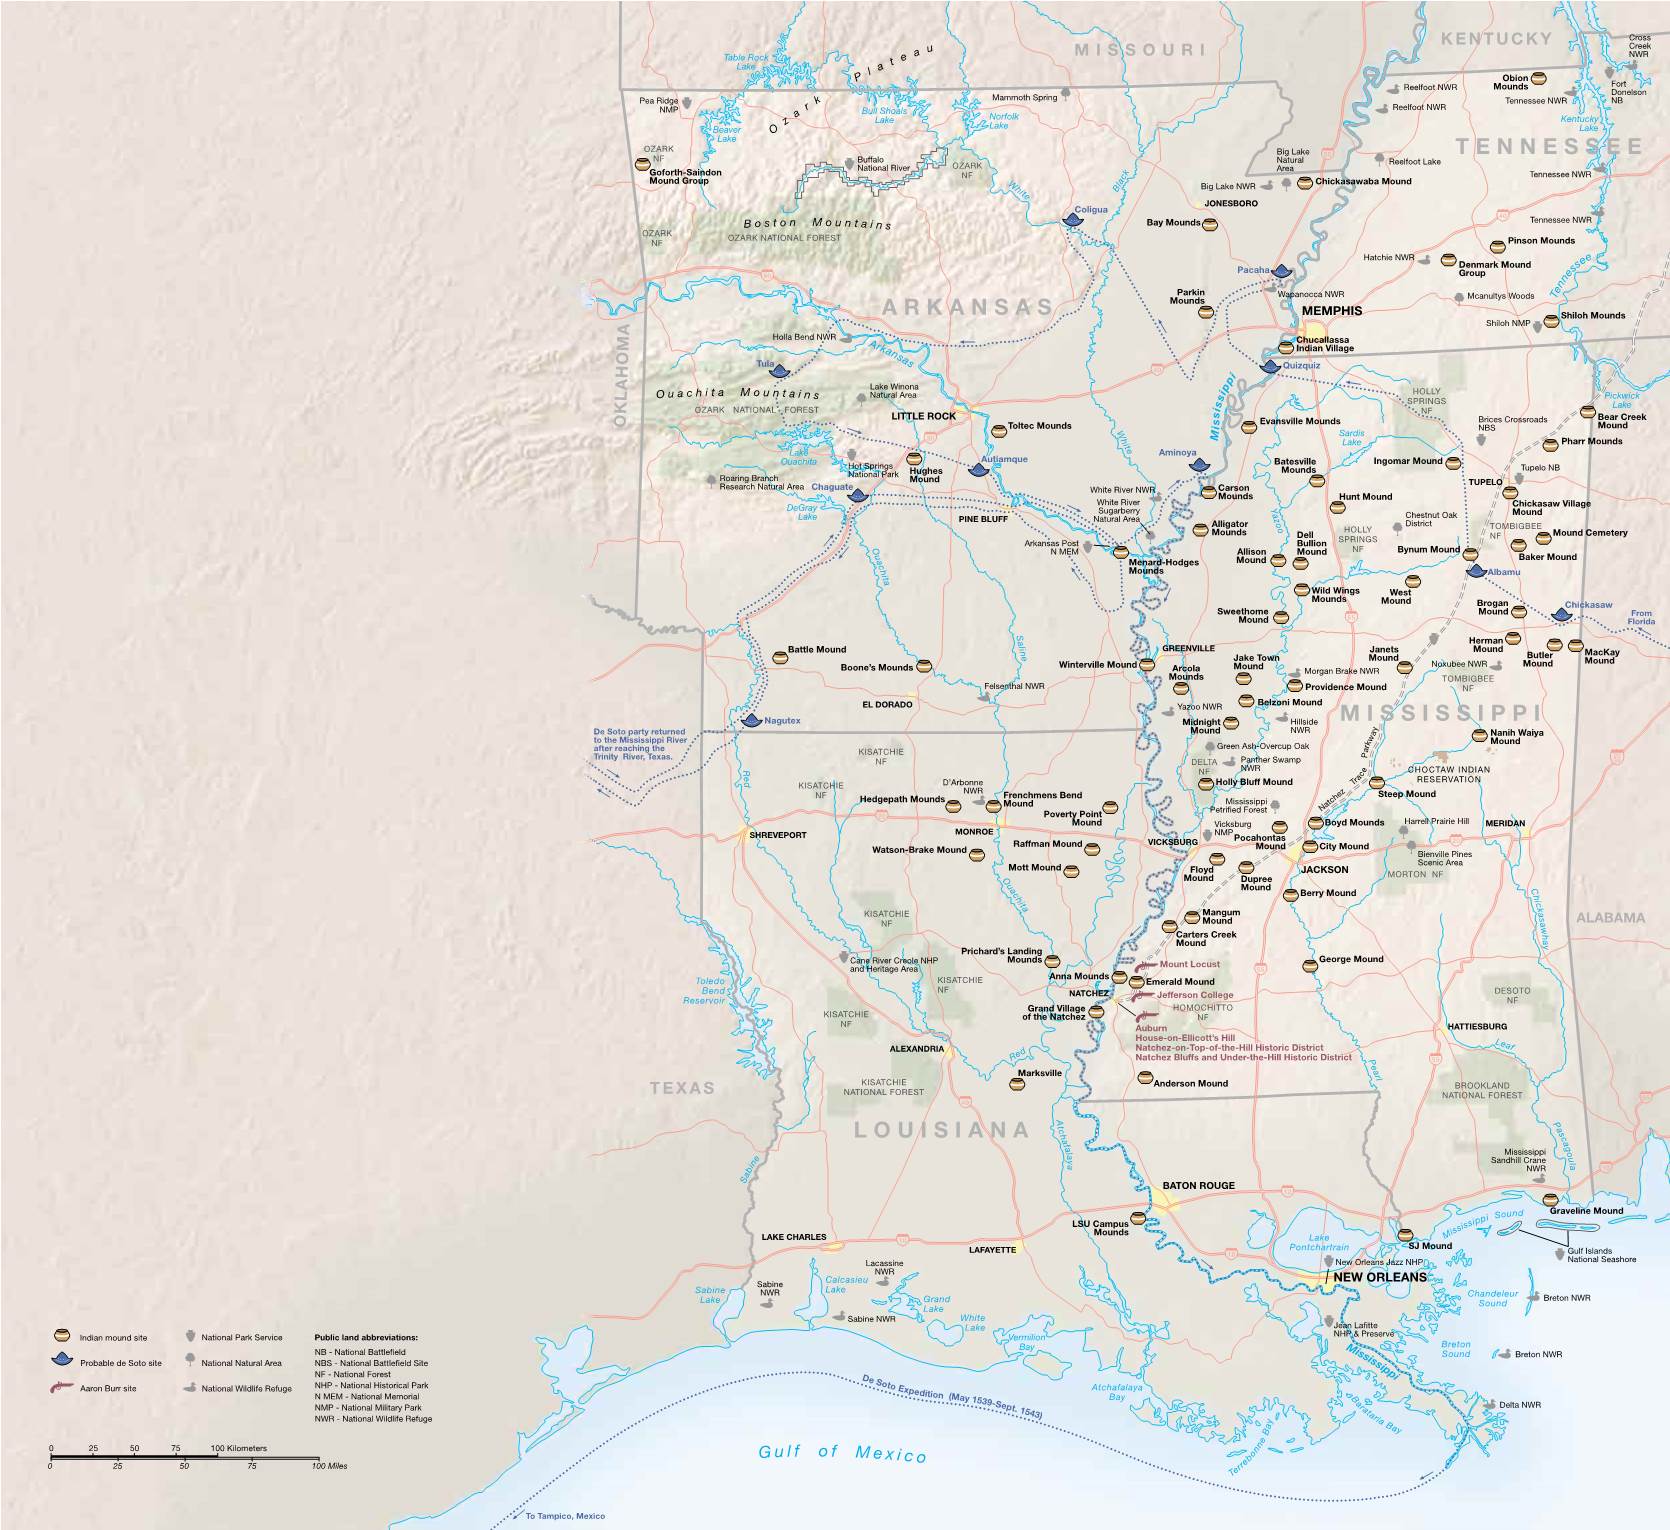 Louisiana Mississippi Tennessee Arkansas